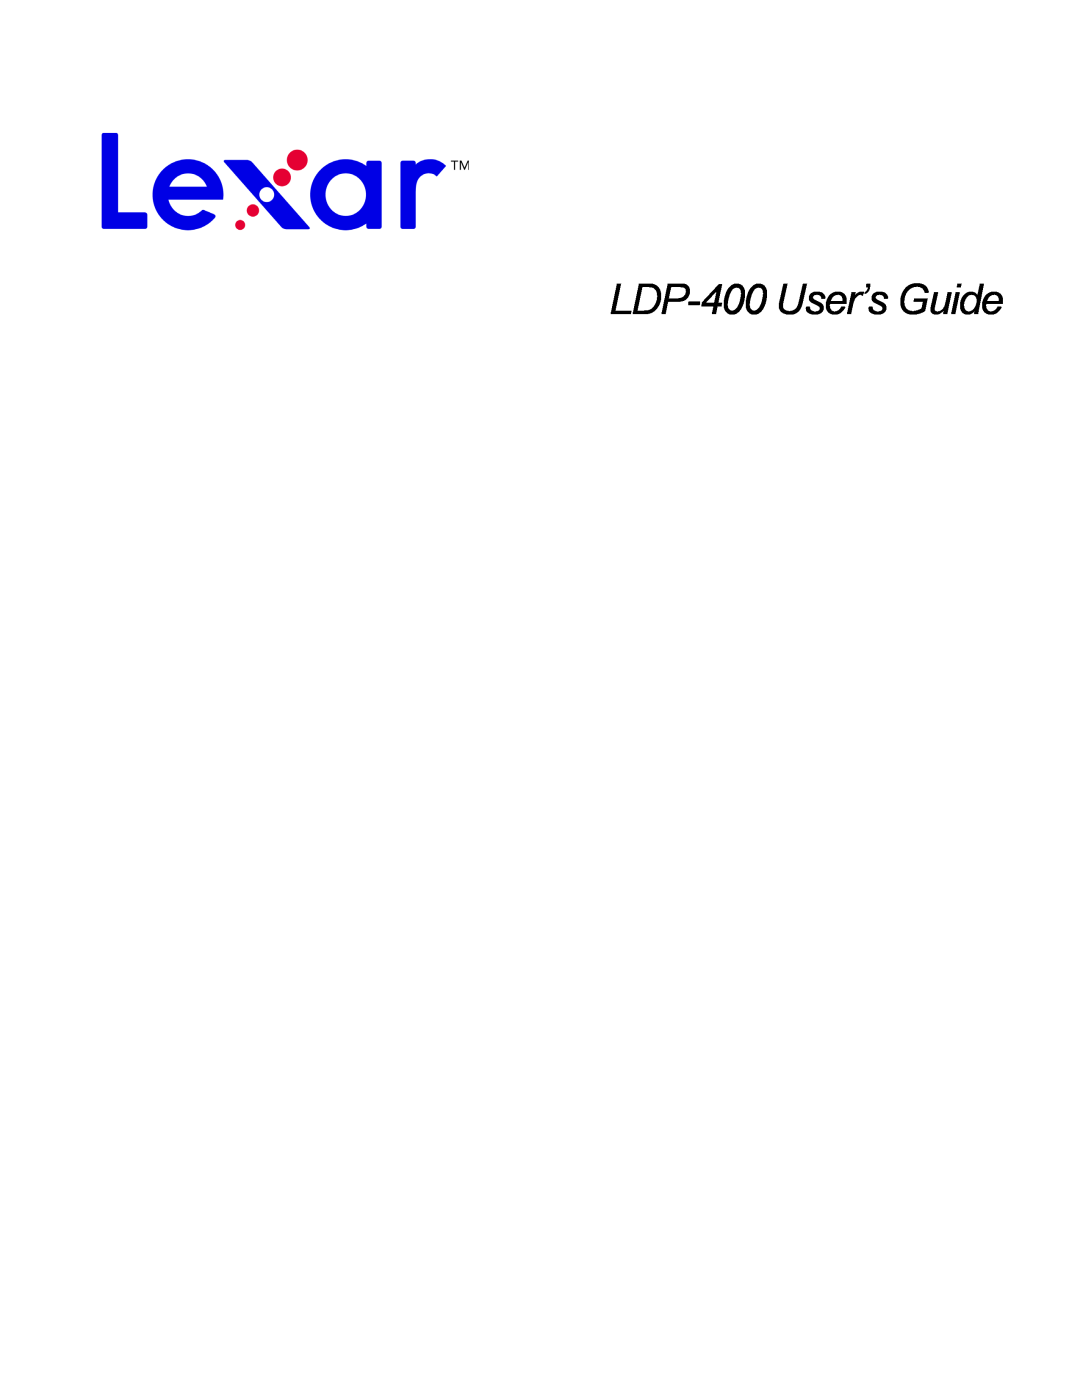 Lexar Media manual LDP-400User’s Guide 